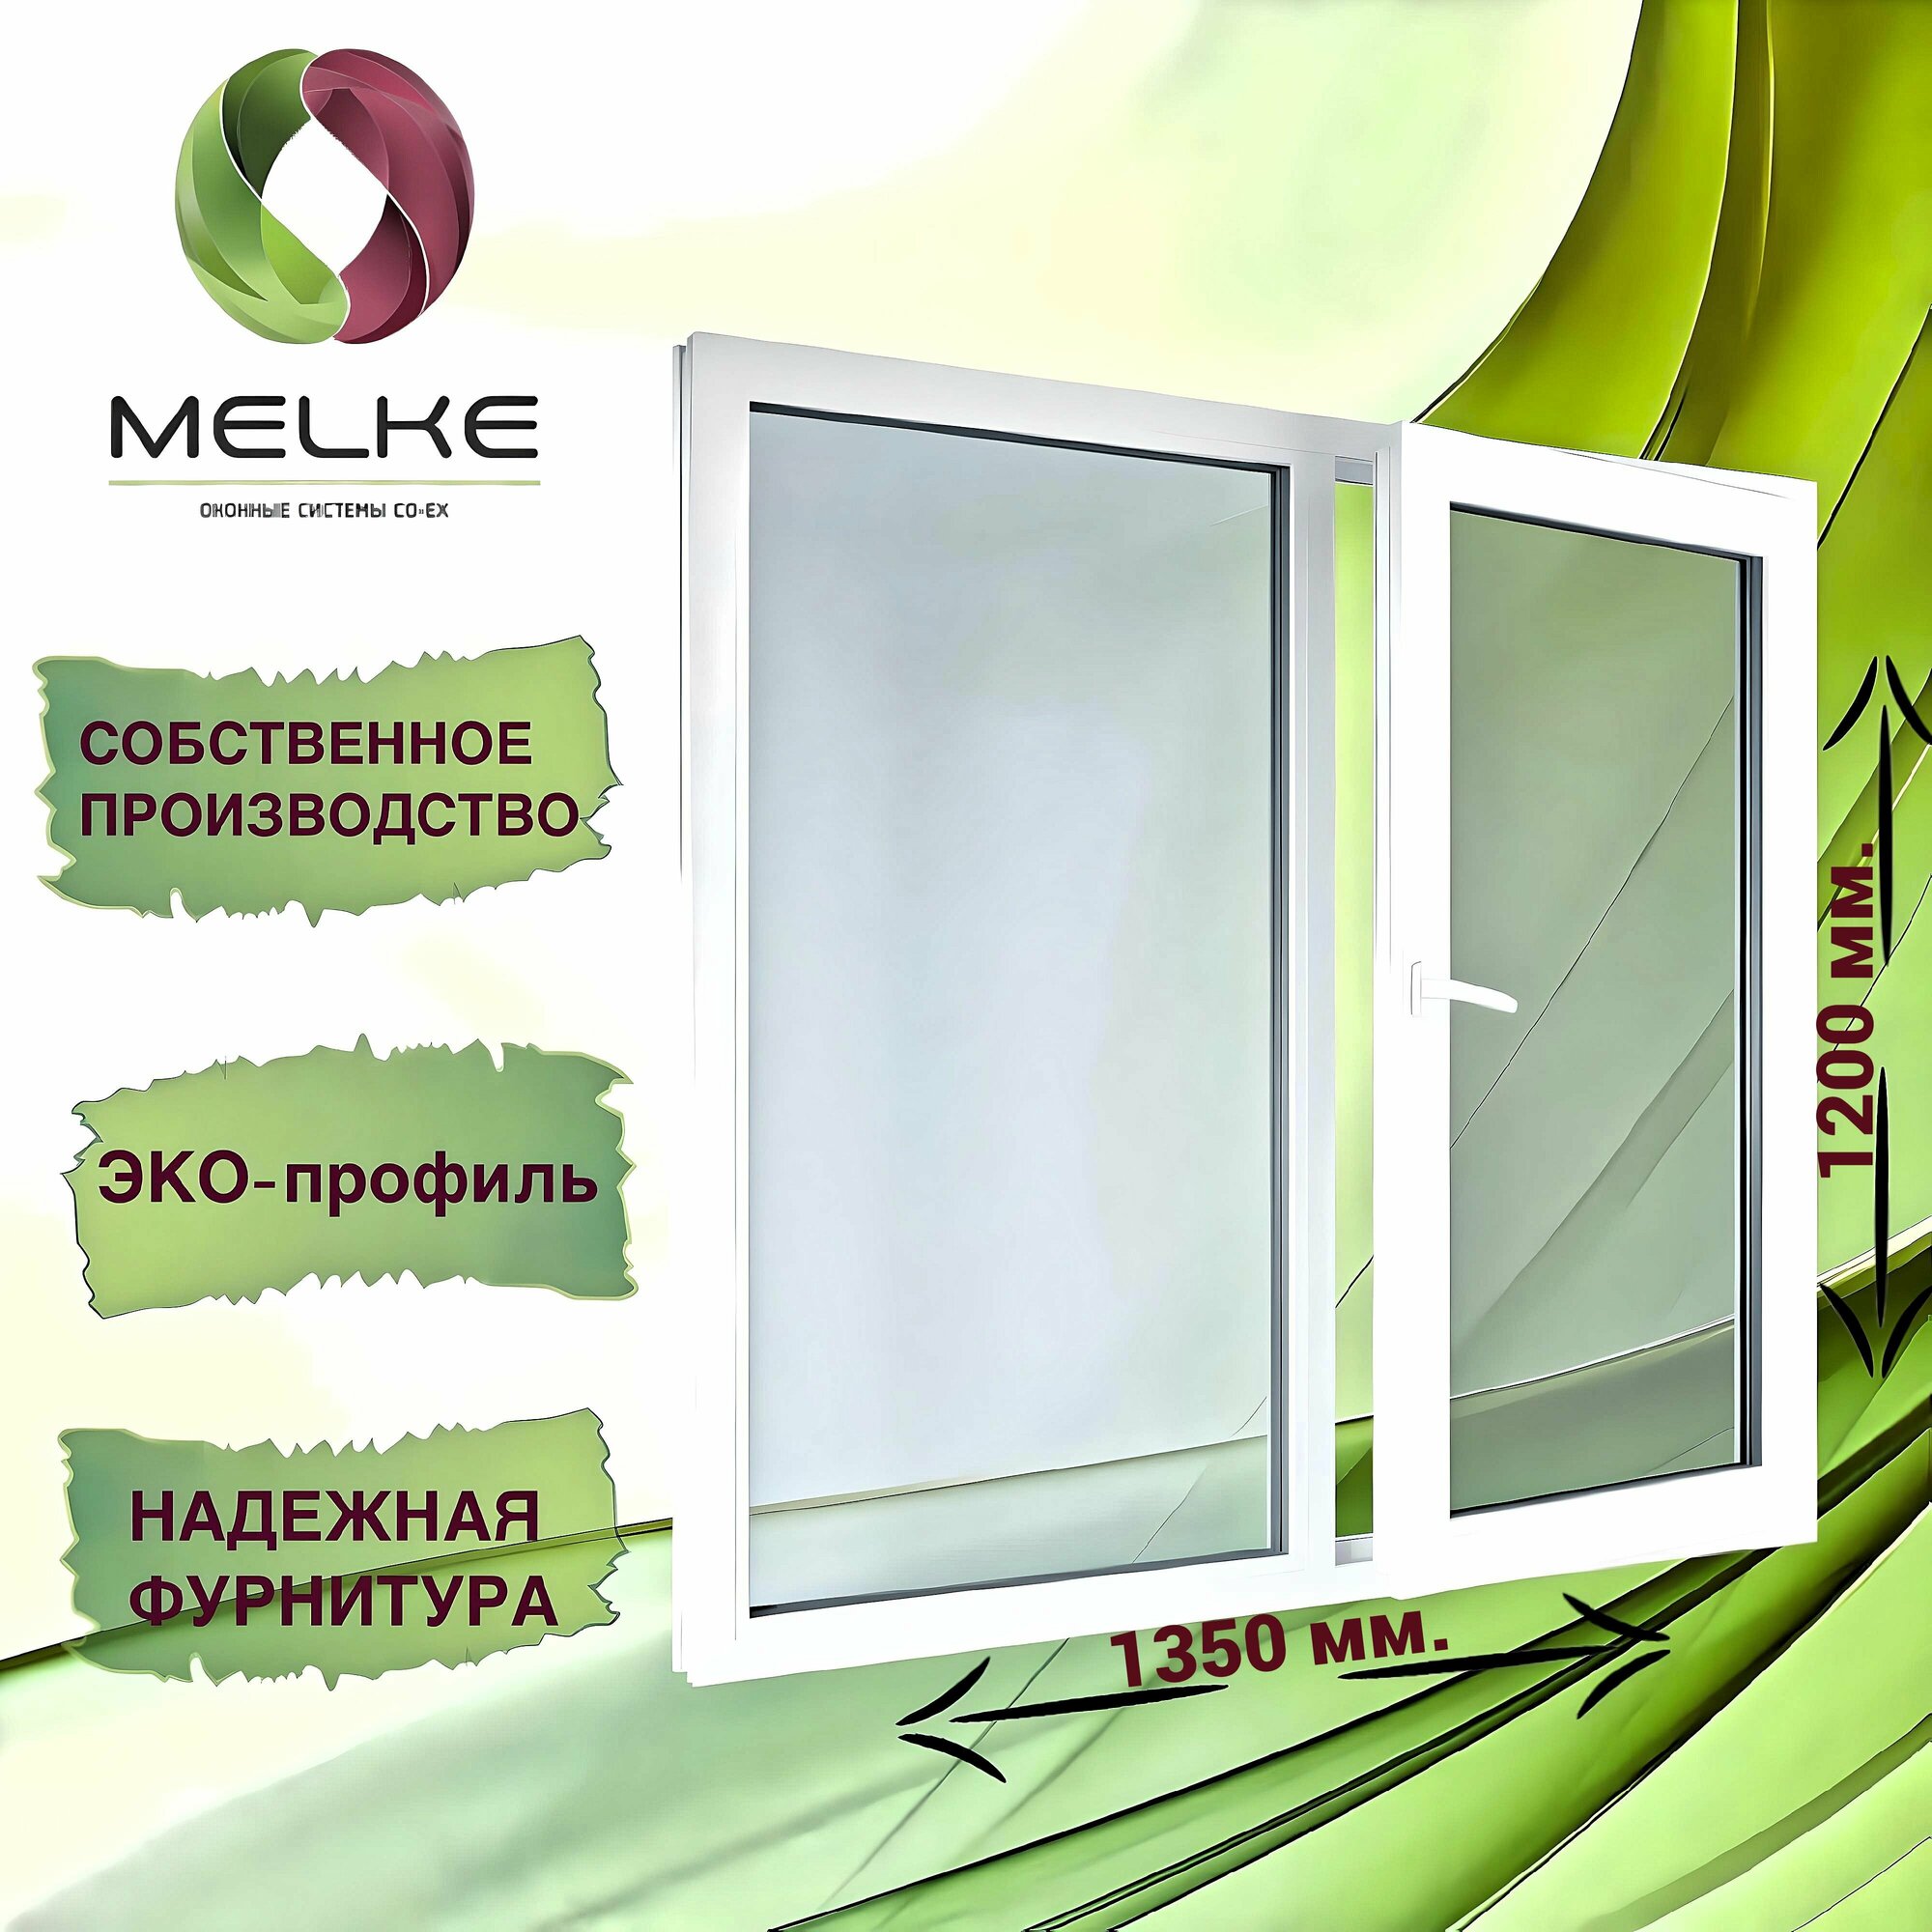 Окно 1200 x 1350 мм, профиль Melke 60 (Фурнитура FUTURUSS), двухстворчатое, с поворотно-откидной правой и глухой левой створками, 2-х камерный стеклопакет, 3 стекла